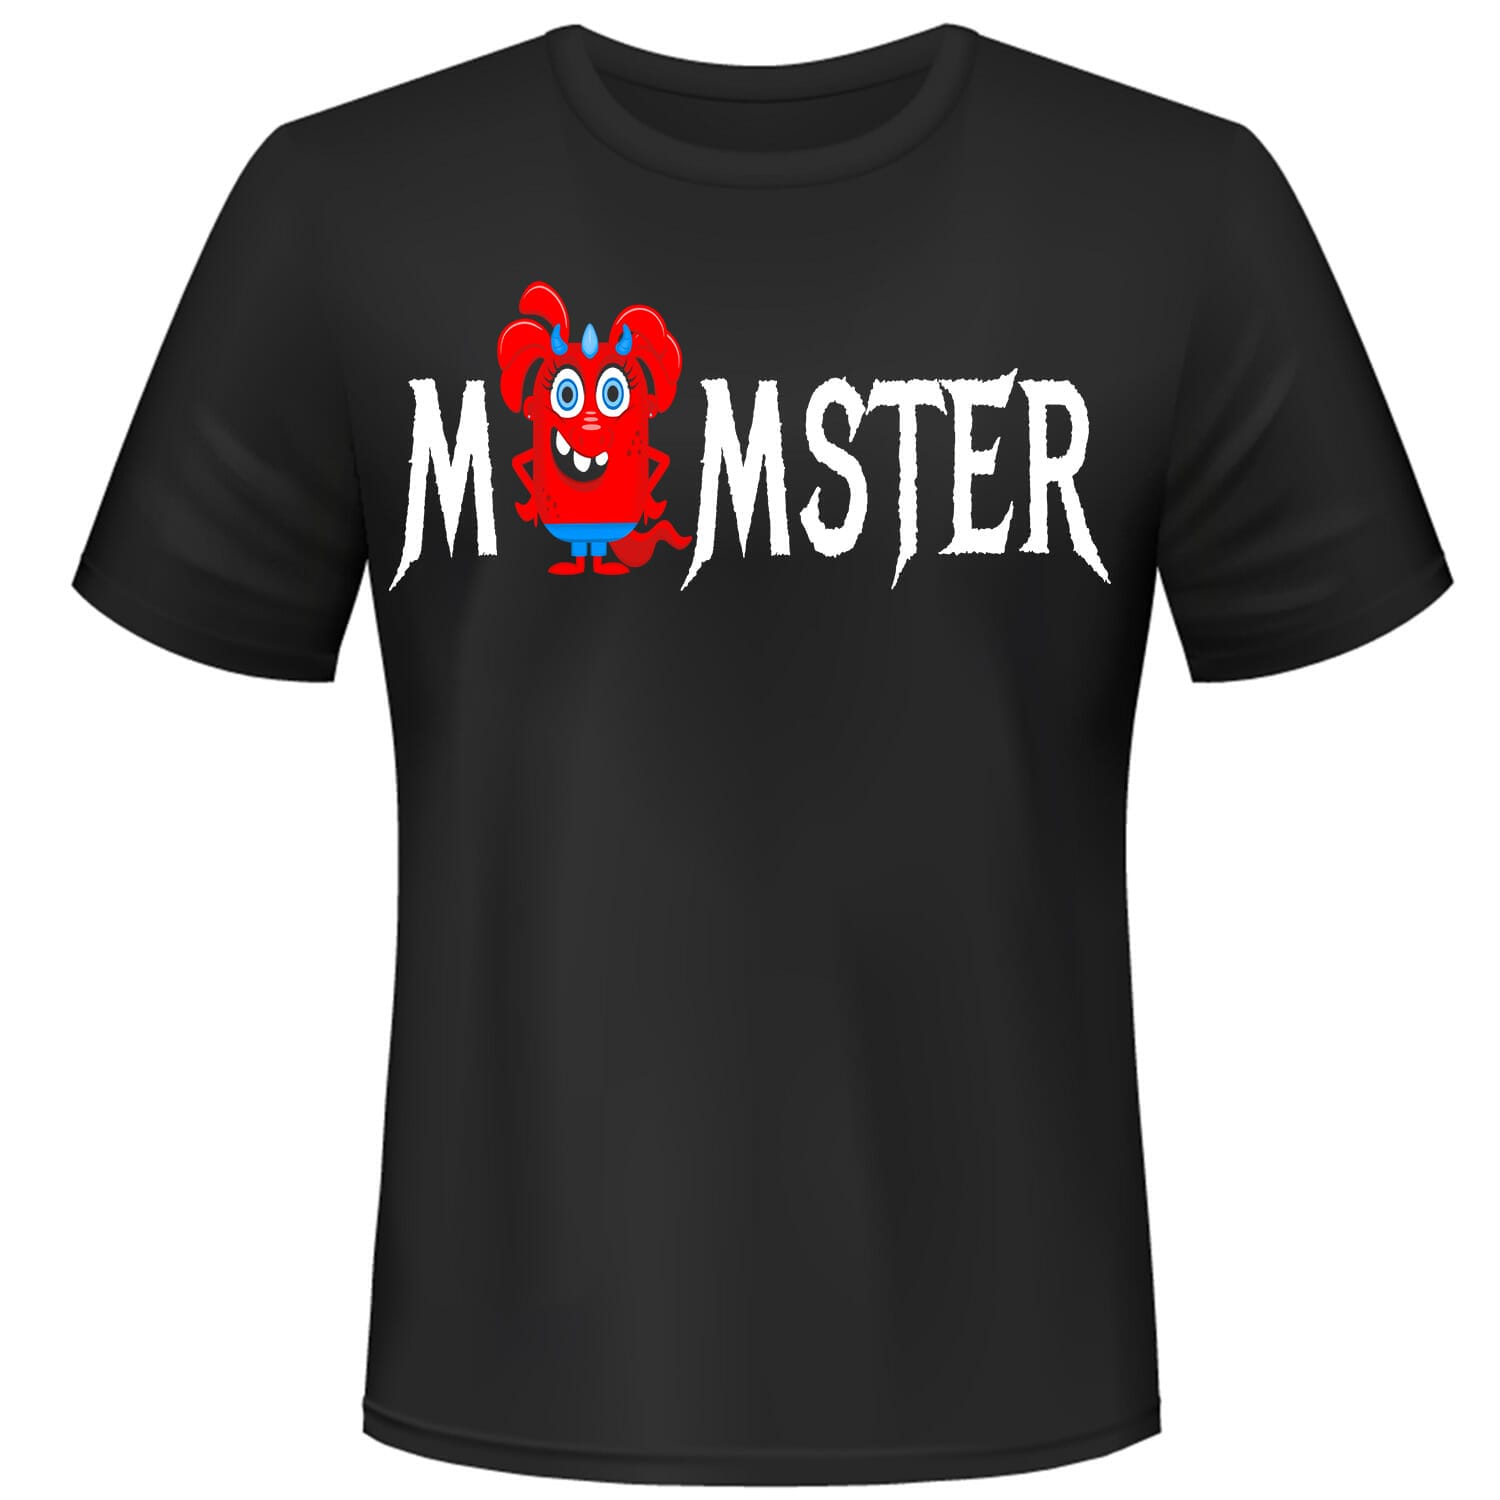 Momster funny monster tshirt design